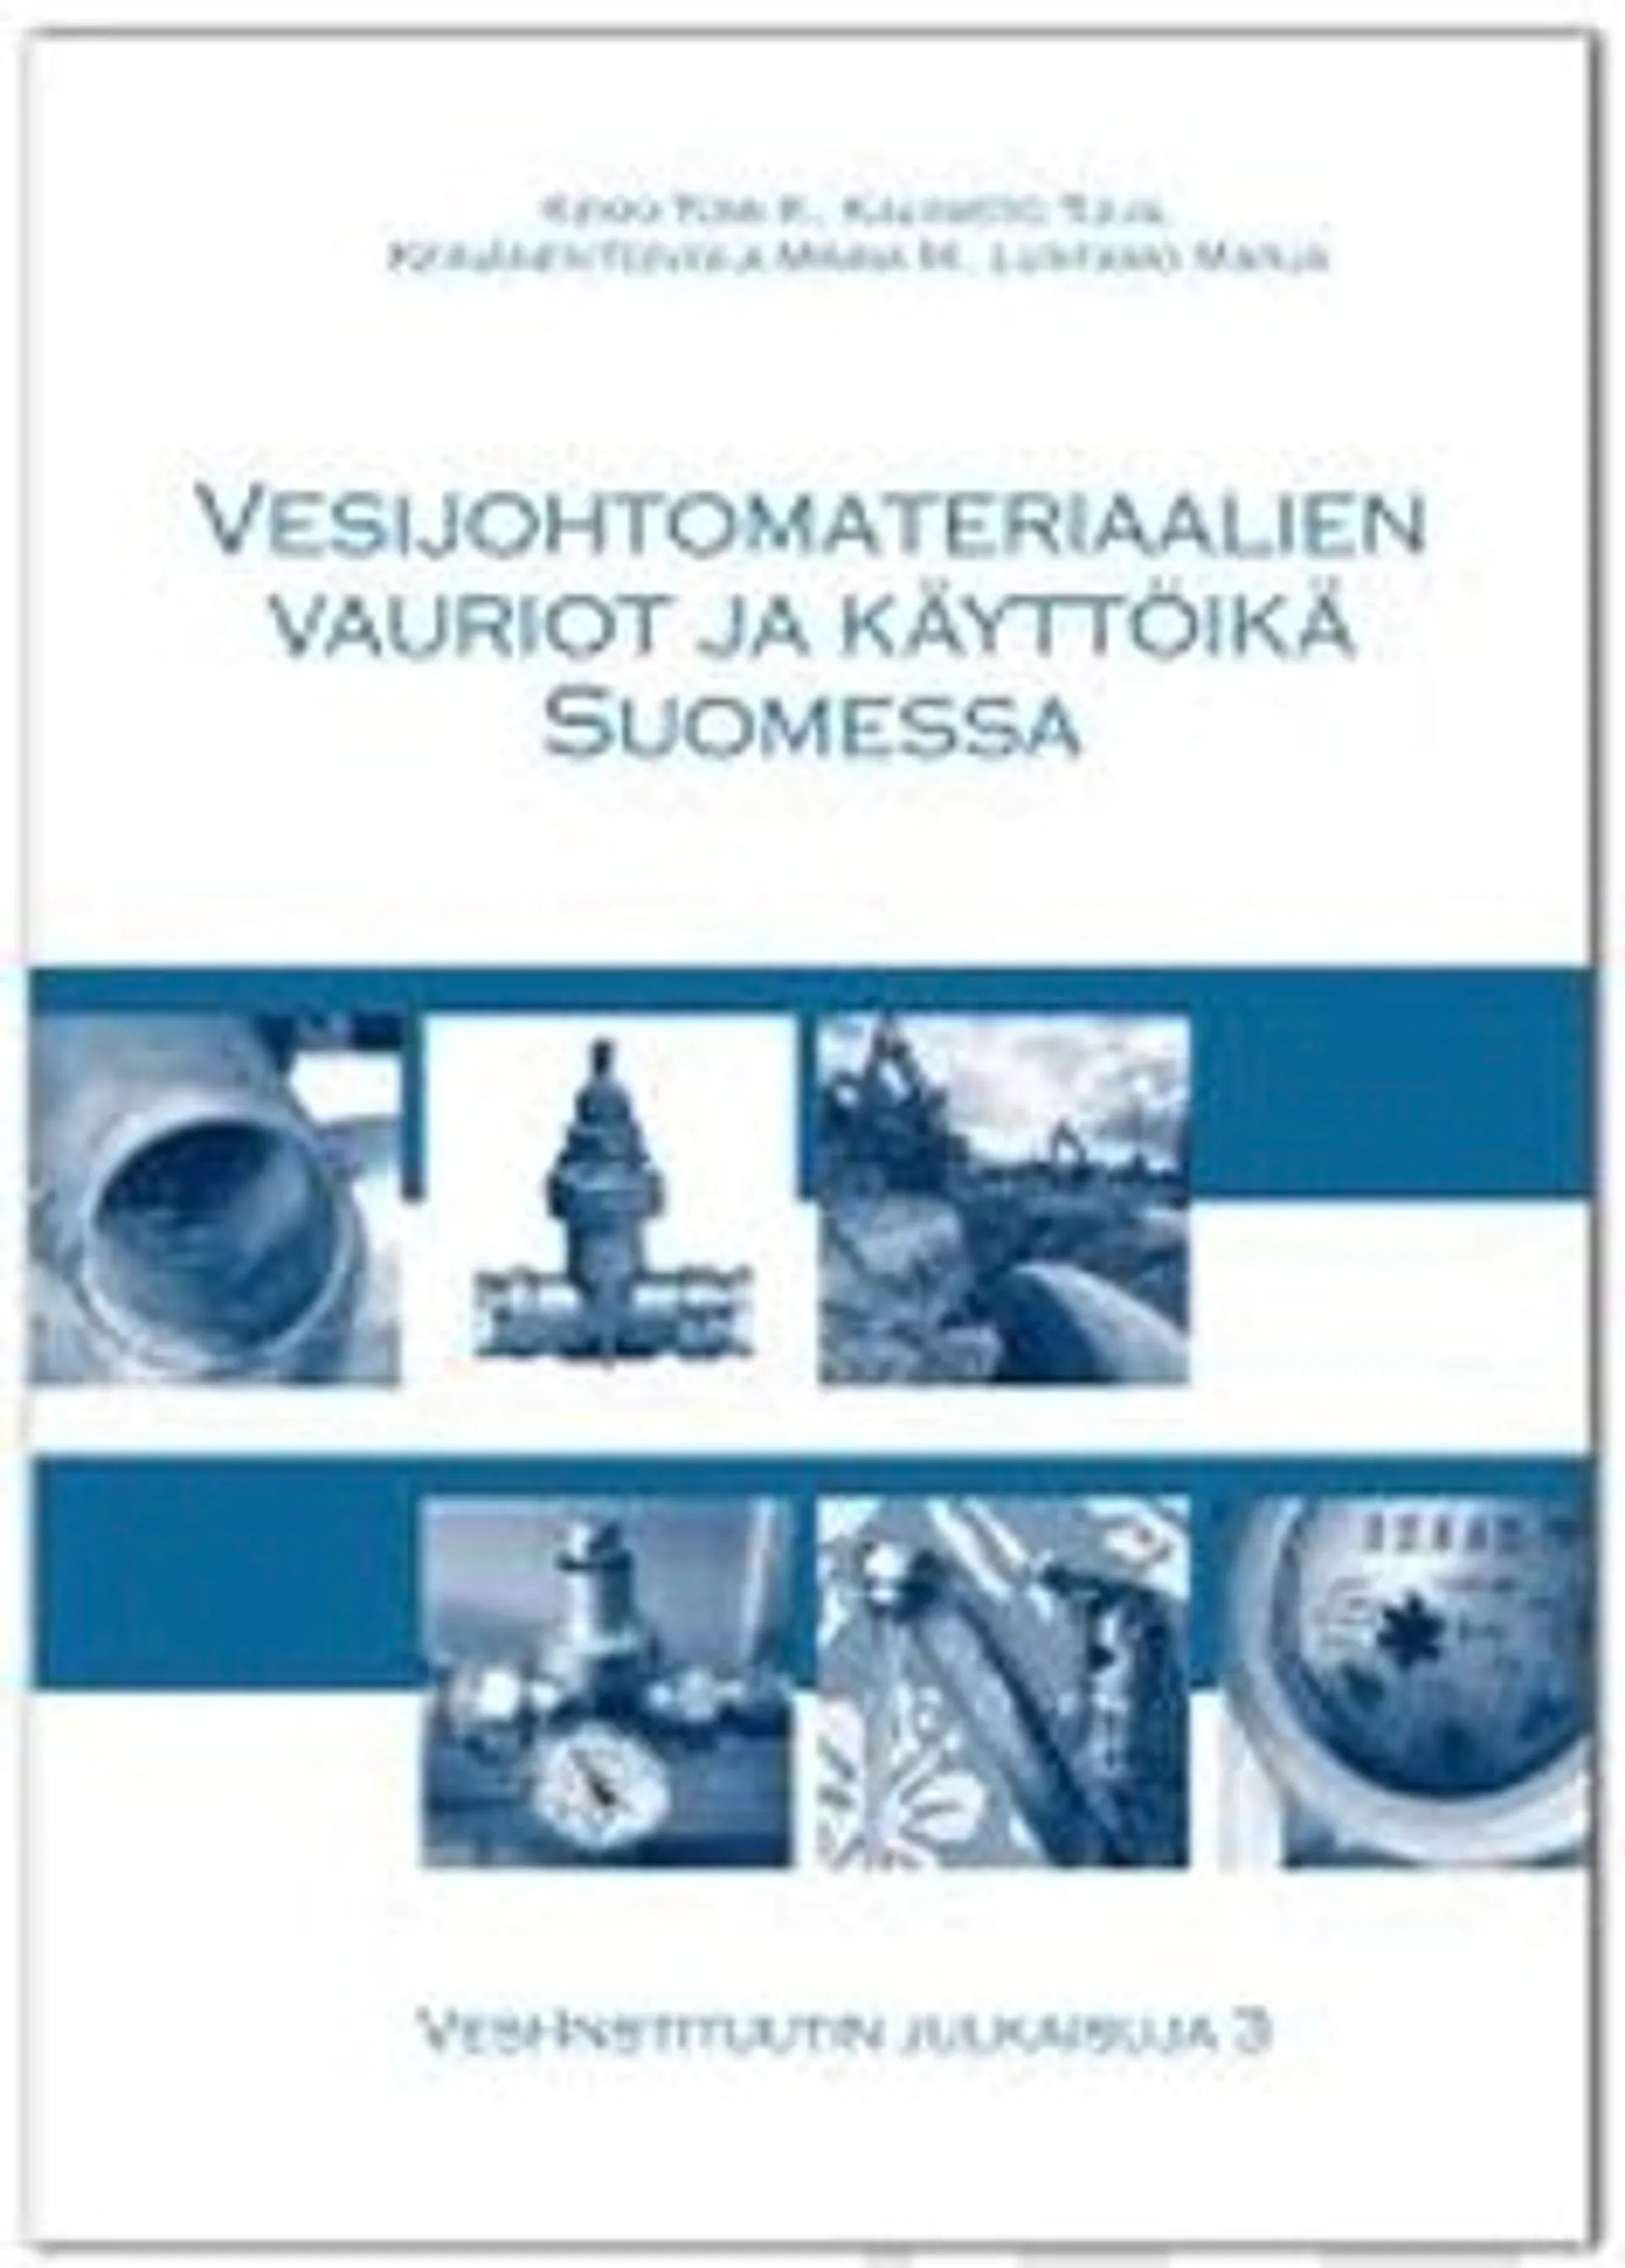 Vesijohtomateriaalien vauriot ja käyttöikä Suomessa